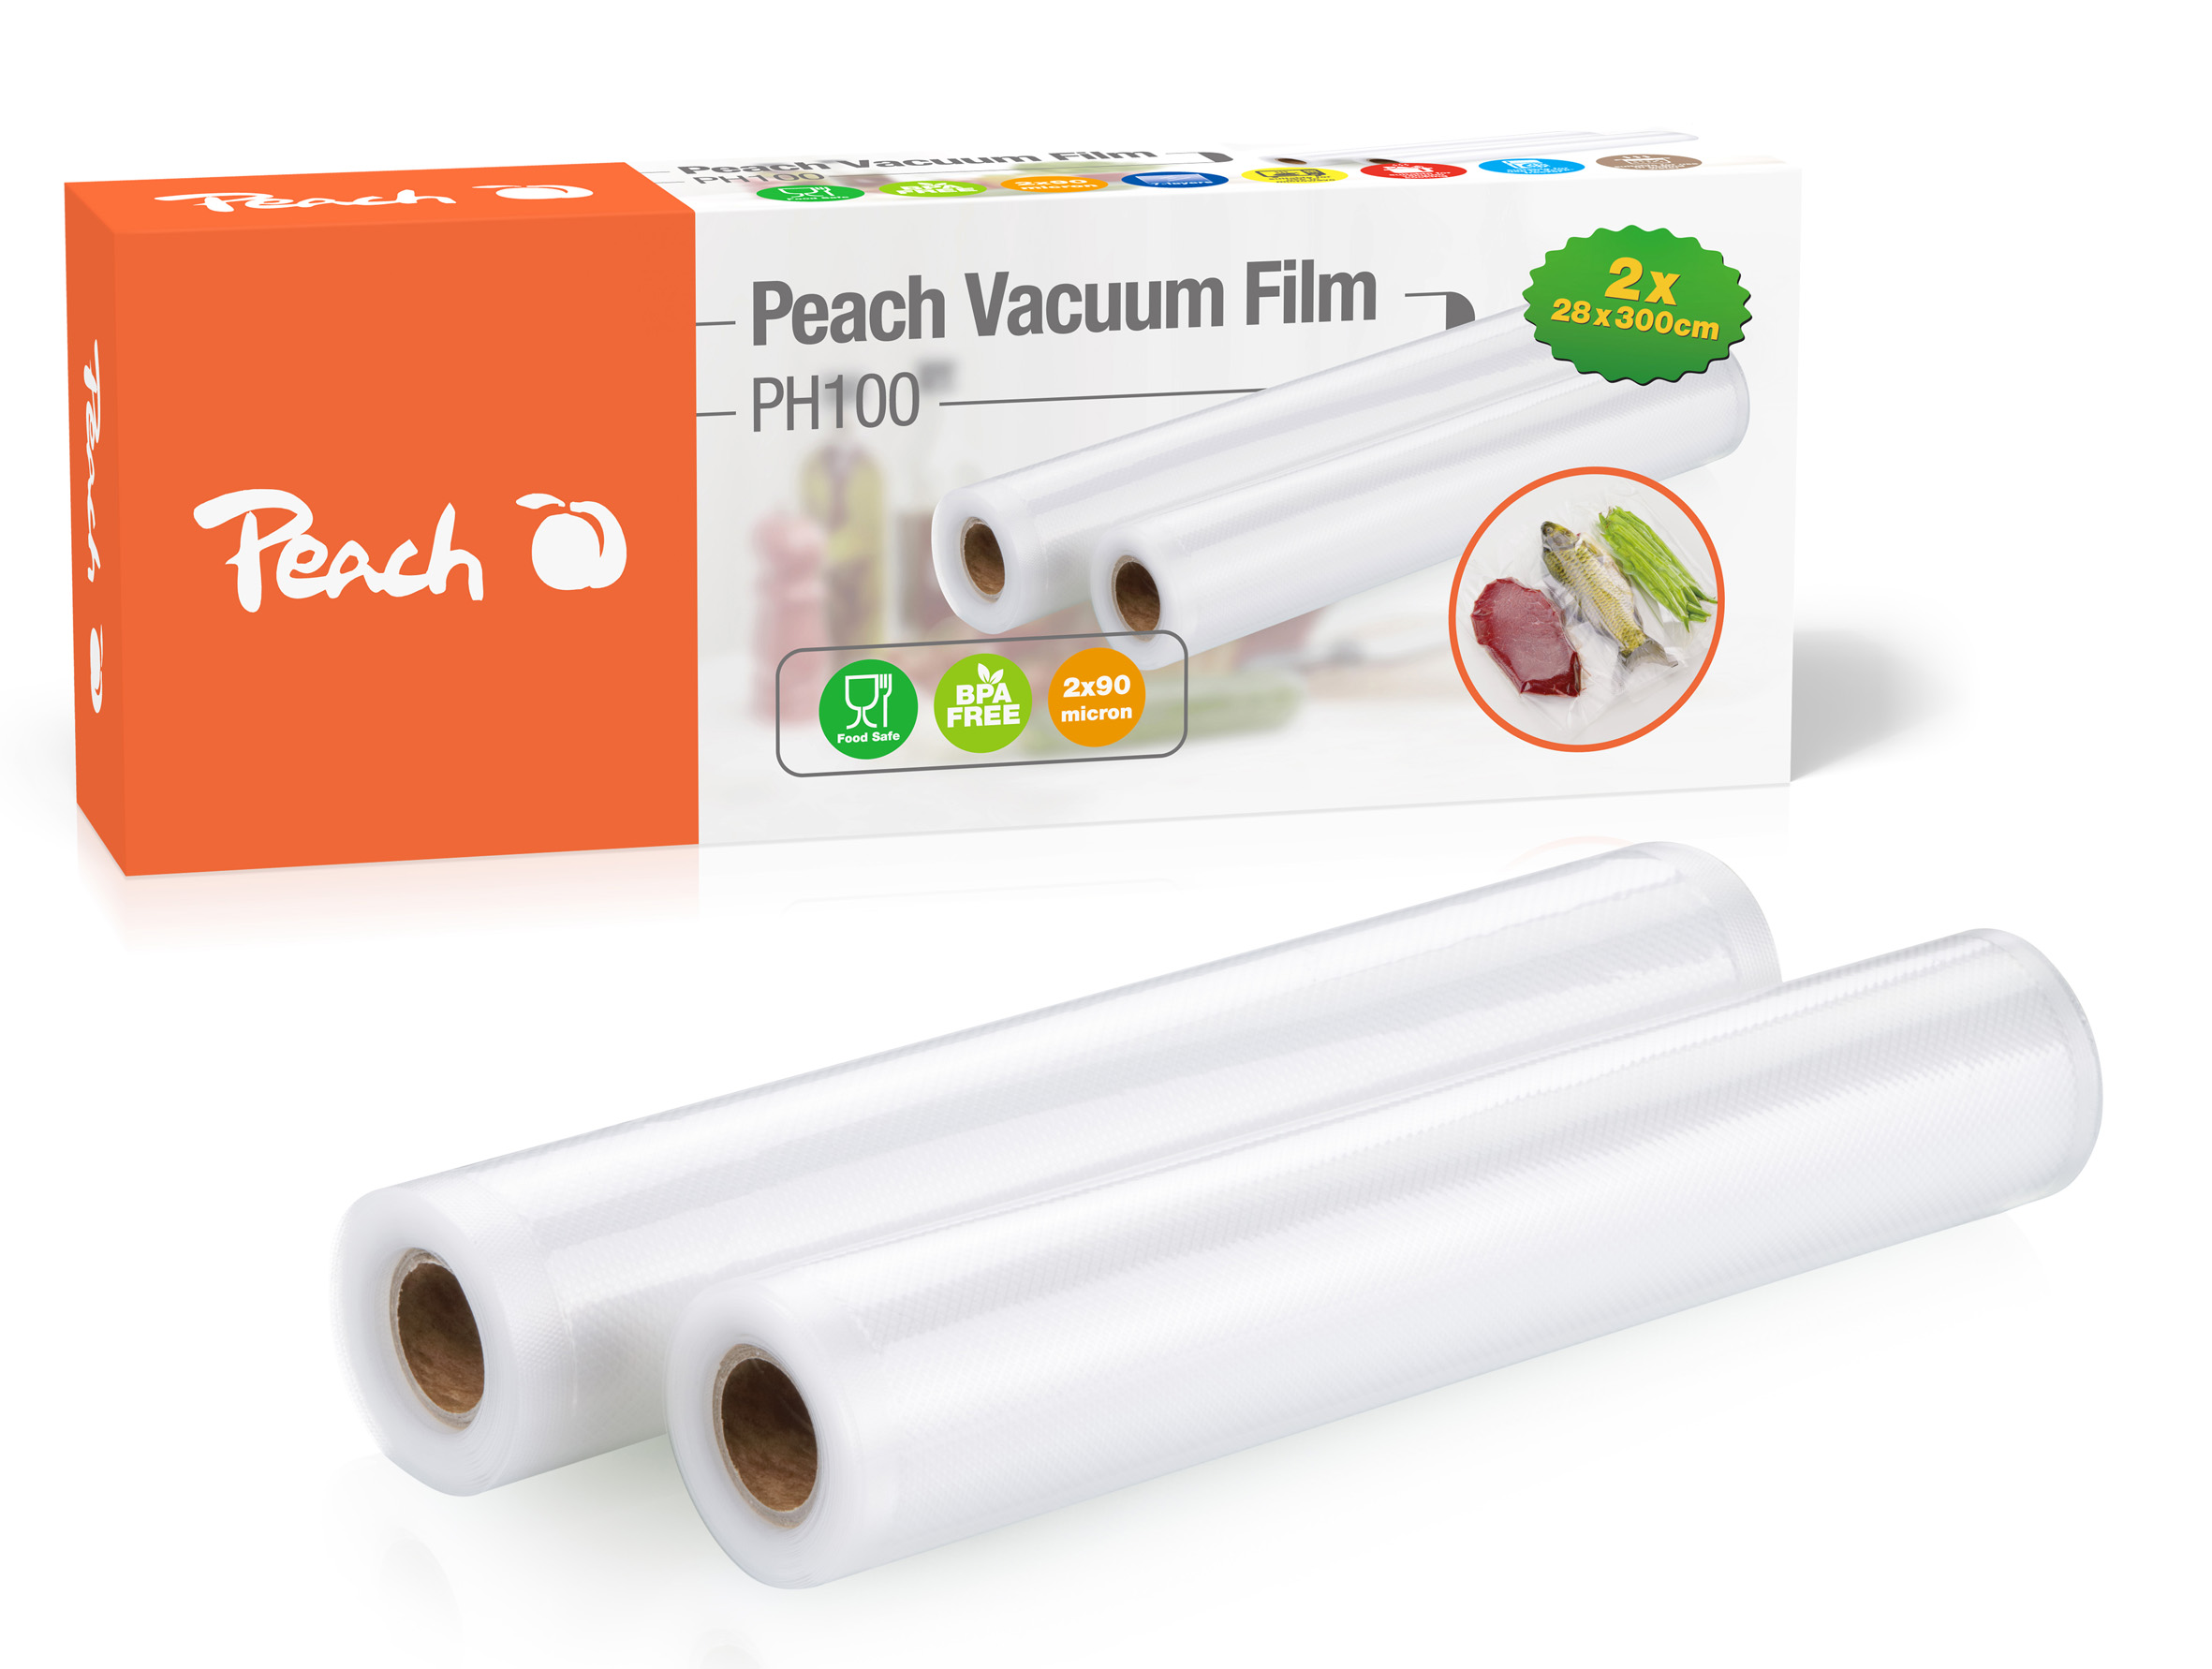 vakuovací fólie Peach Vacuum Film PH100, 2 role 28 x 300 cm, 2 x 90 mic, sedmi vrstvá